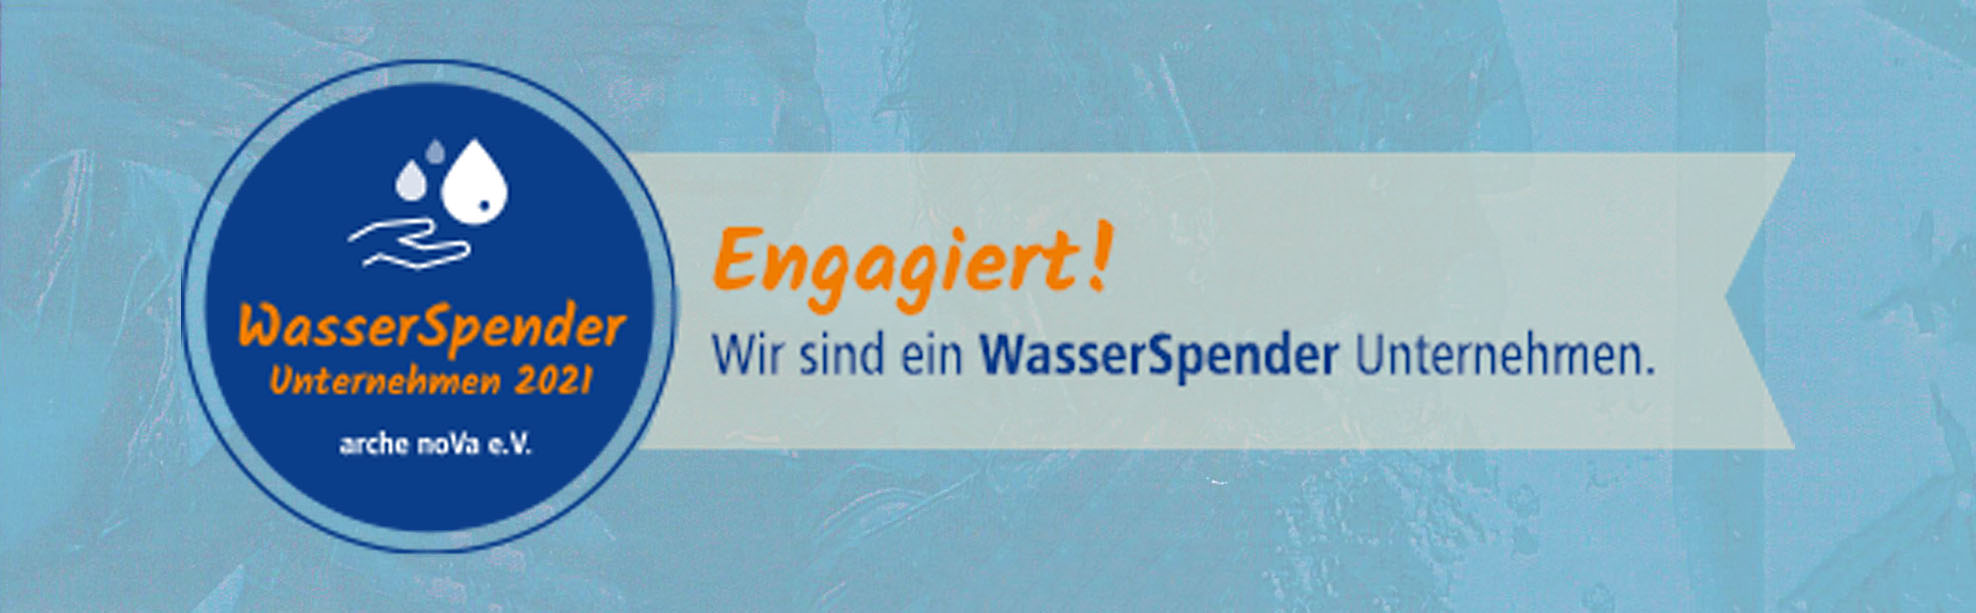 WasserSpender Unternehmen 2021 - DATEC Netzwerke & Druckerlösungen GmbH